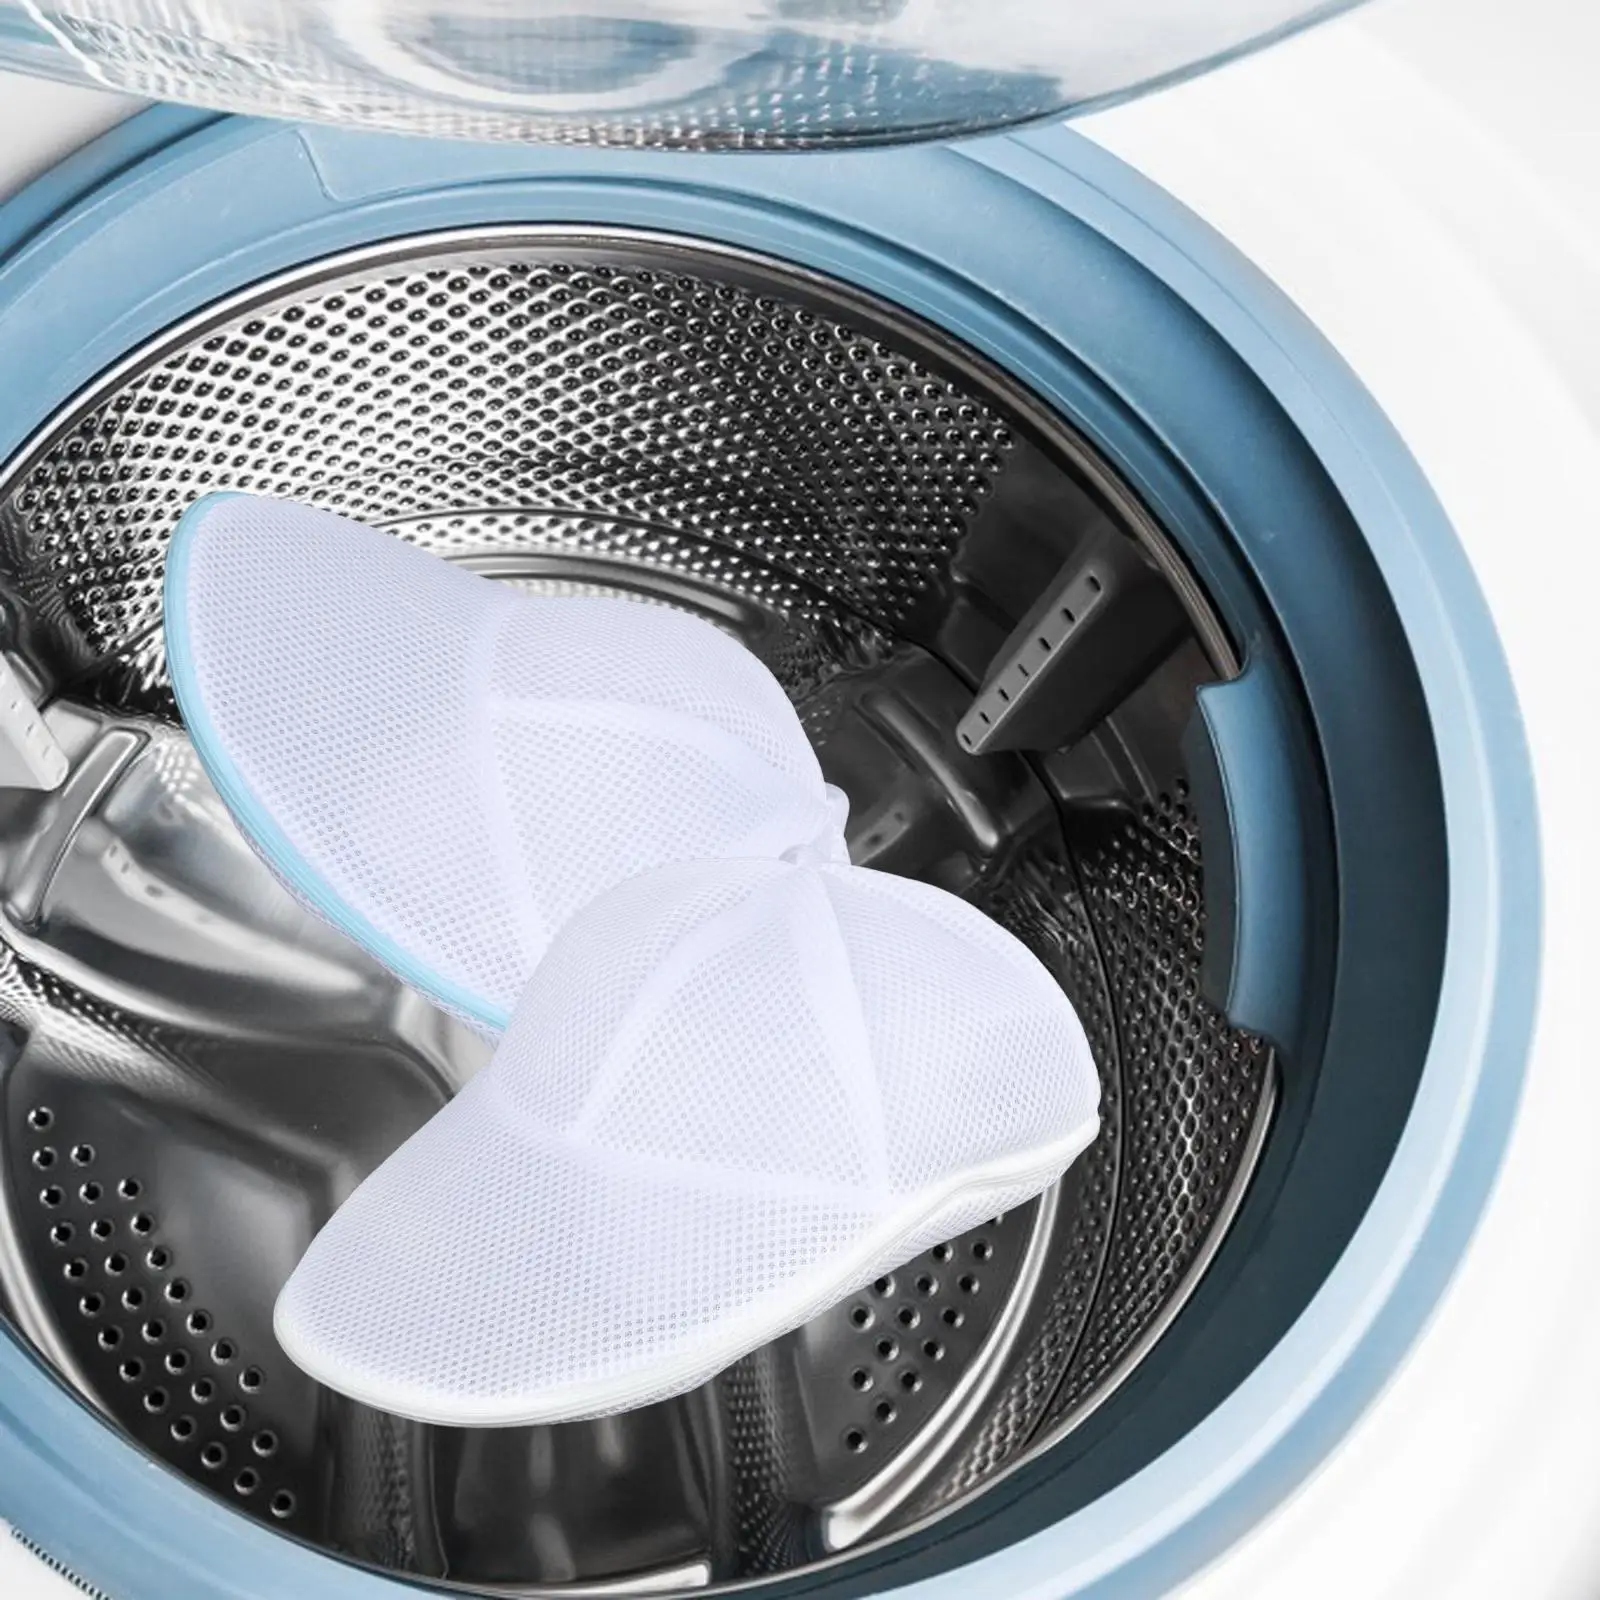 Baseball Cap Cleaner Mesh Bag for Washing Machine Versatile Cap Organizer